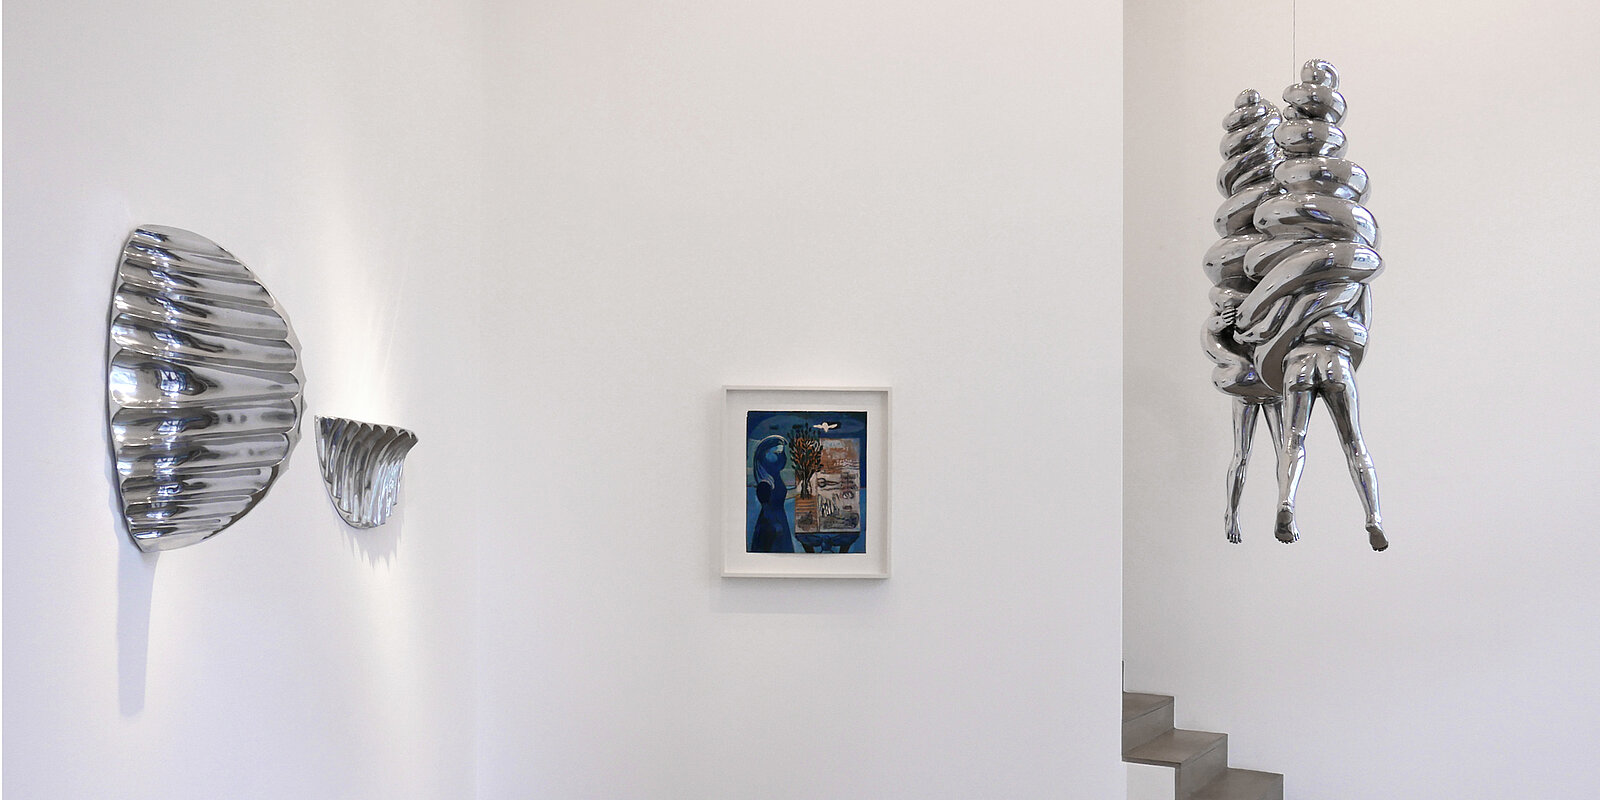 Vue d'installation, Louise Bourgeois, Galerie Karsten Greve AG, St. Moritz, 2020. Photo: Christina Marx